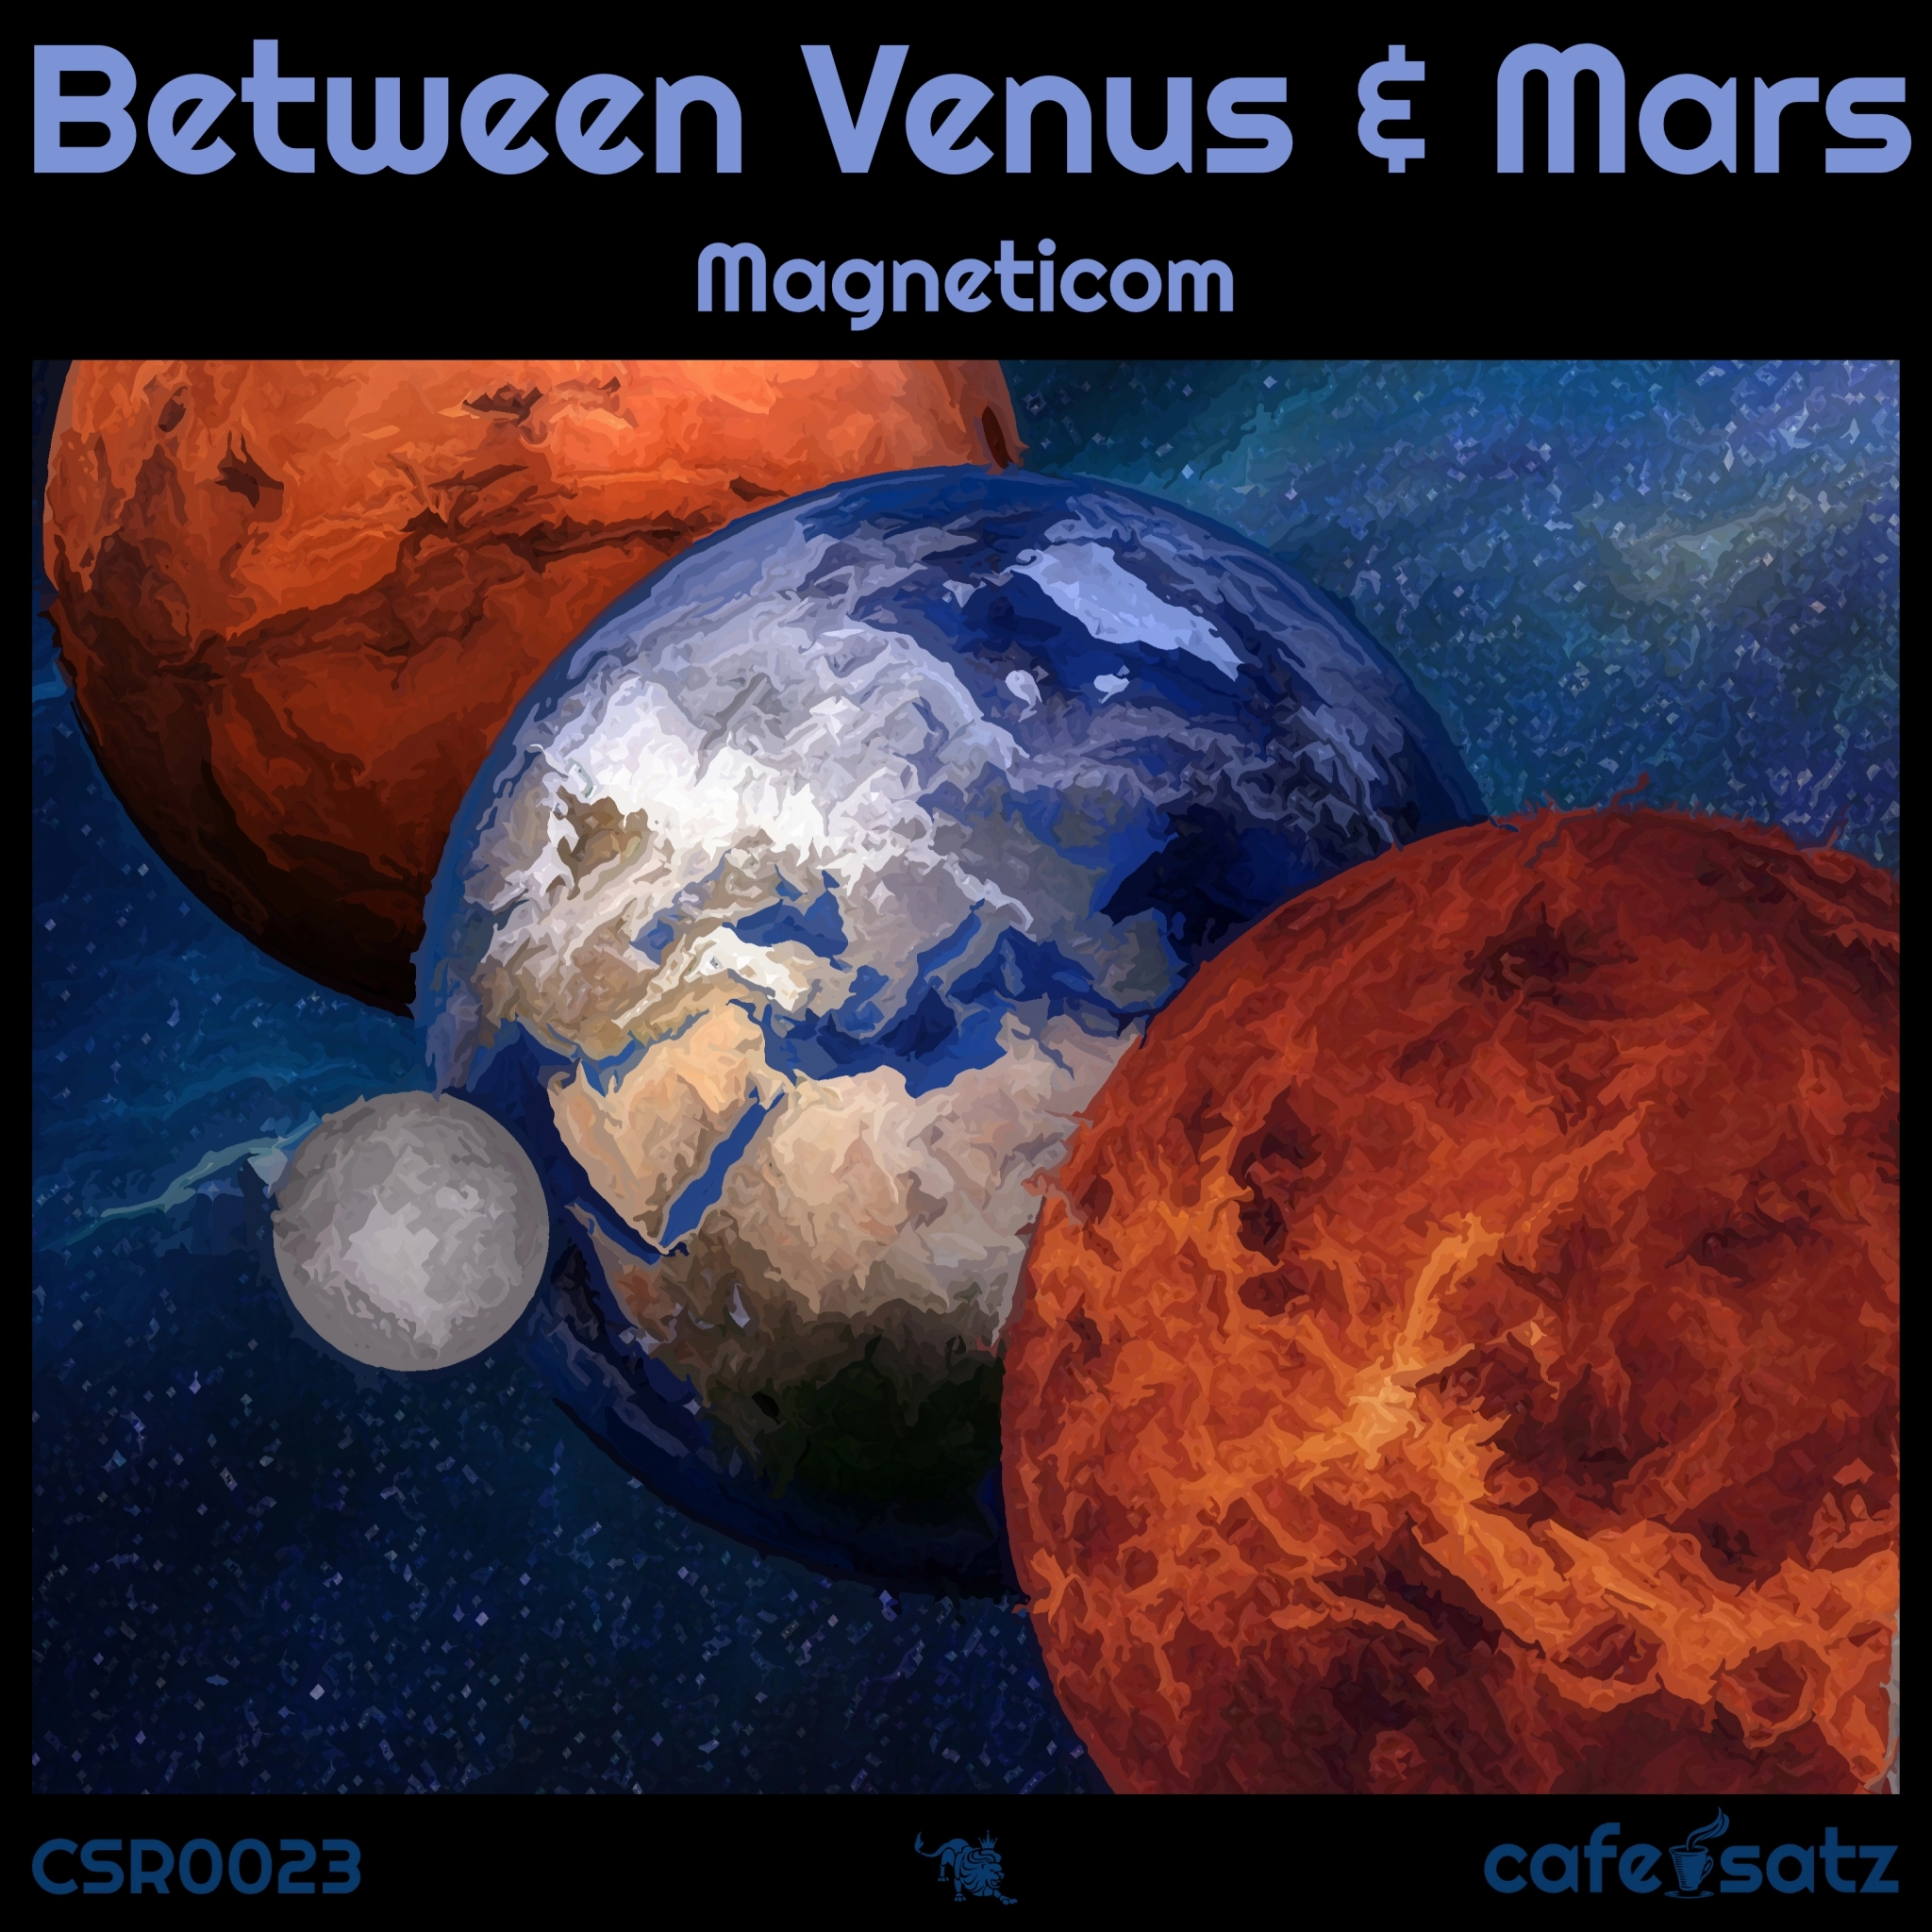 Advertising: Magneticom - Between Venus & Mars